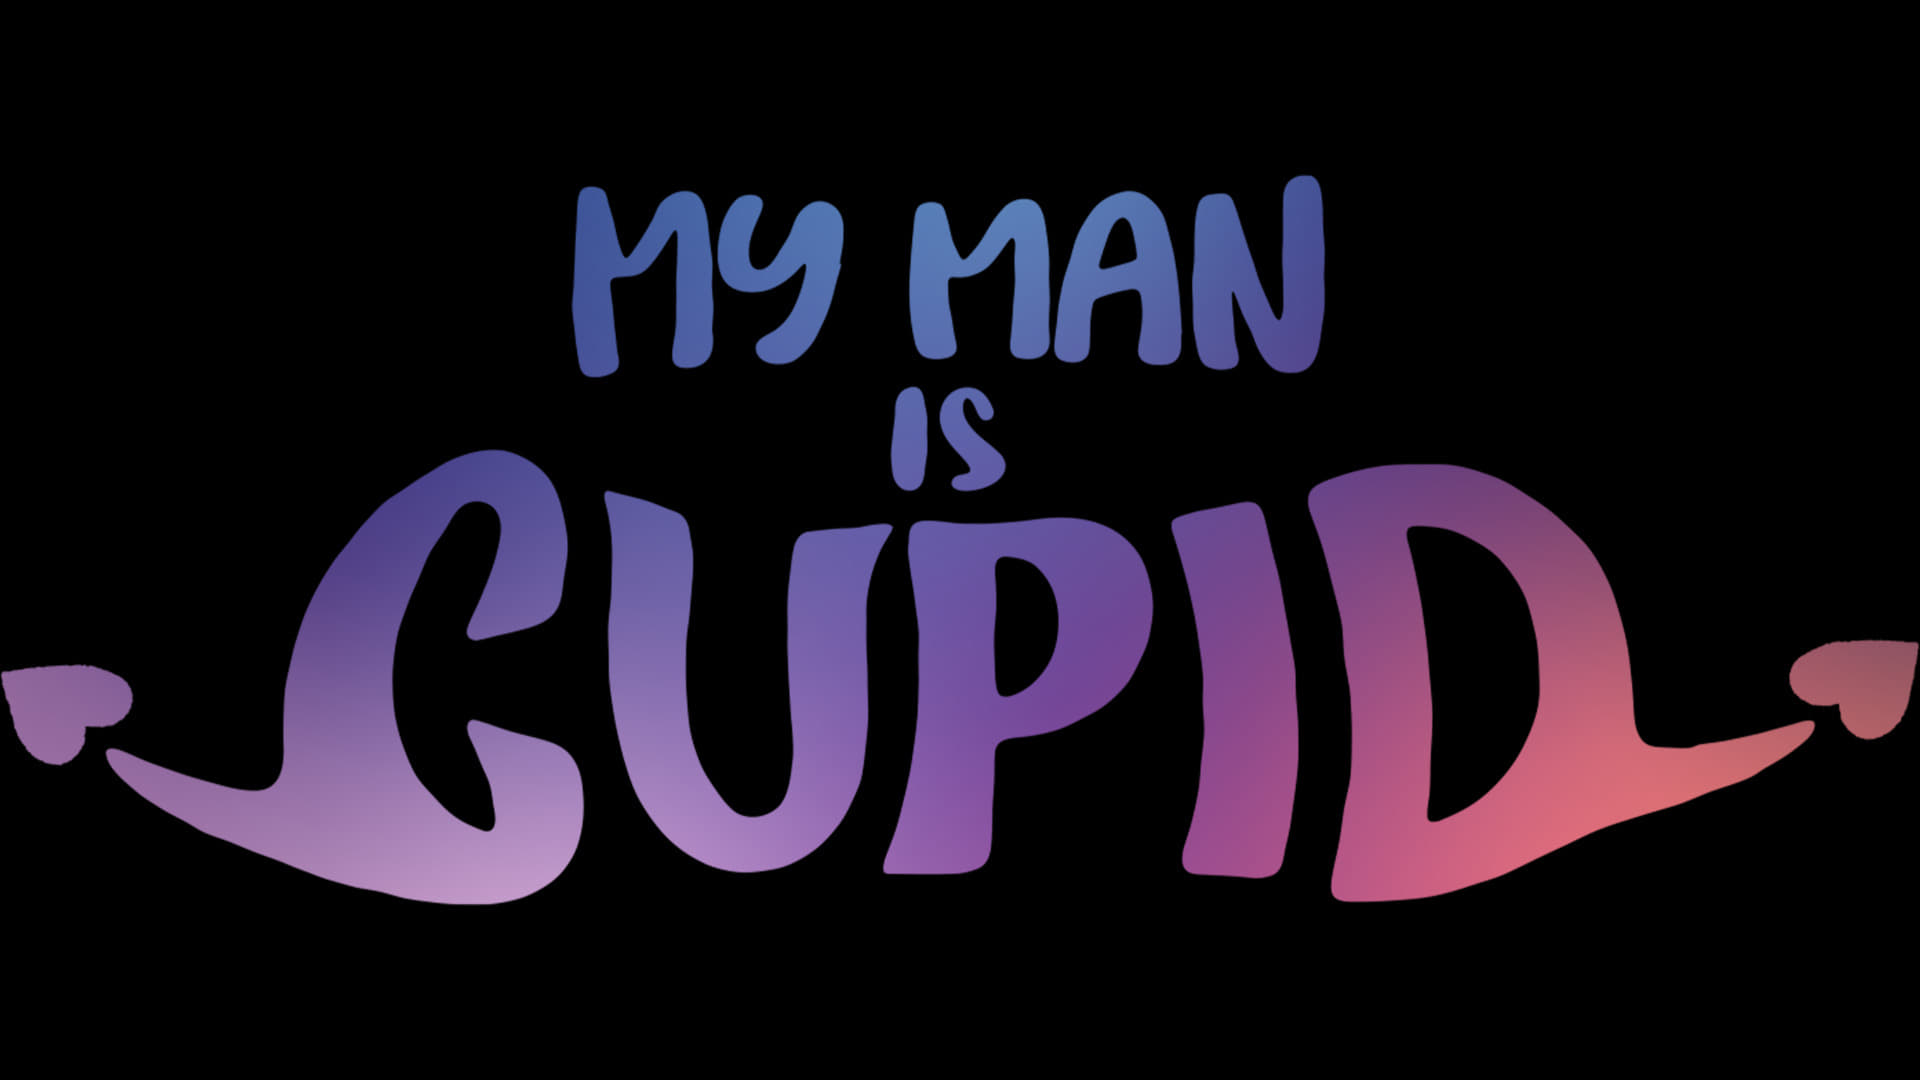 ปิ๊งรักนายคิวปิด (My Man is Cupid) - Season 1 Episode 11